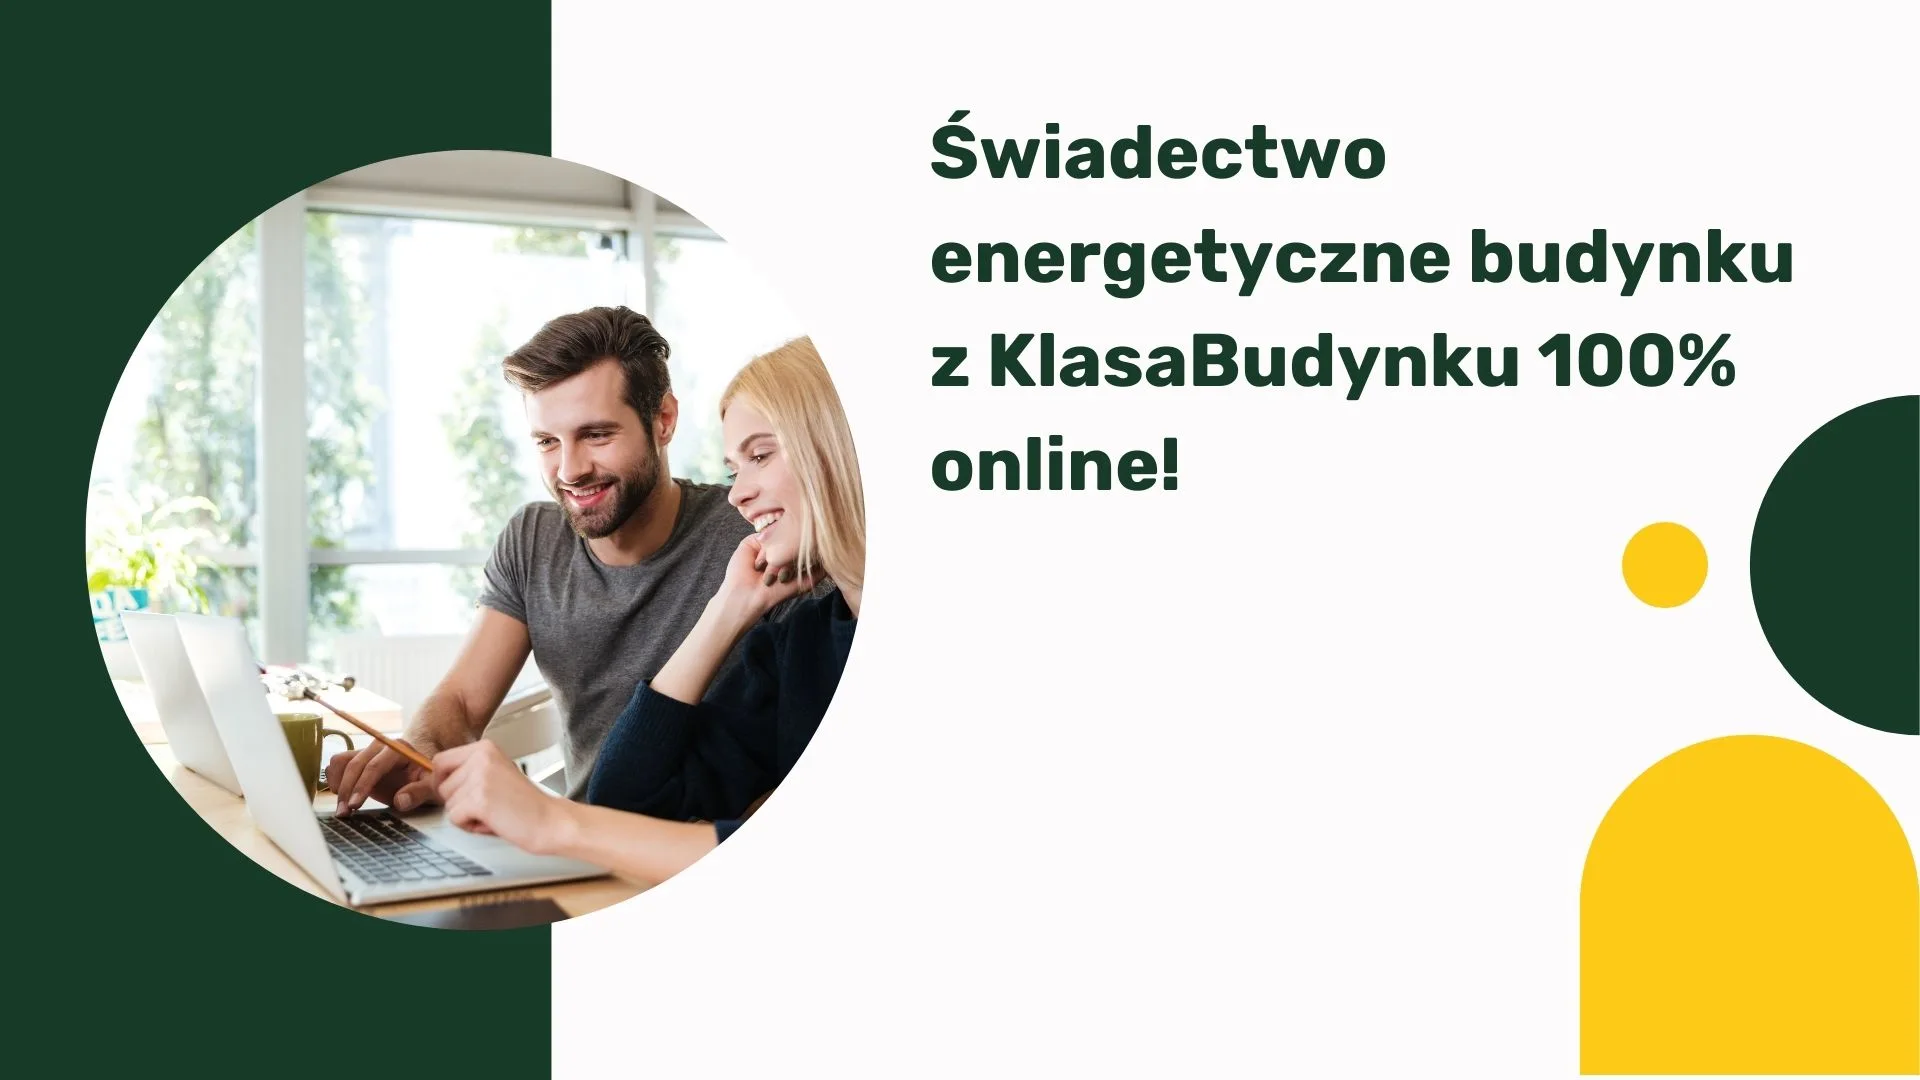 Świadectwo energetyczne budynku z KlasaBudynku 100% online!